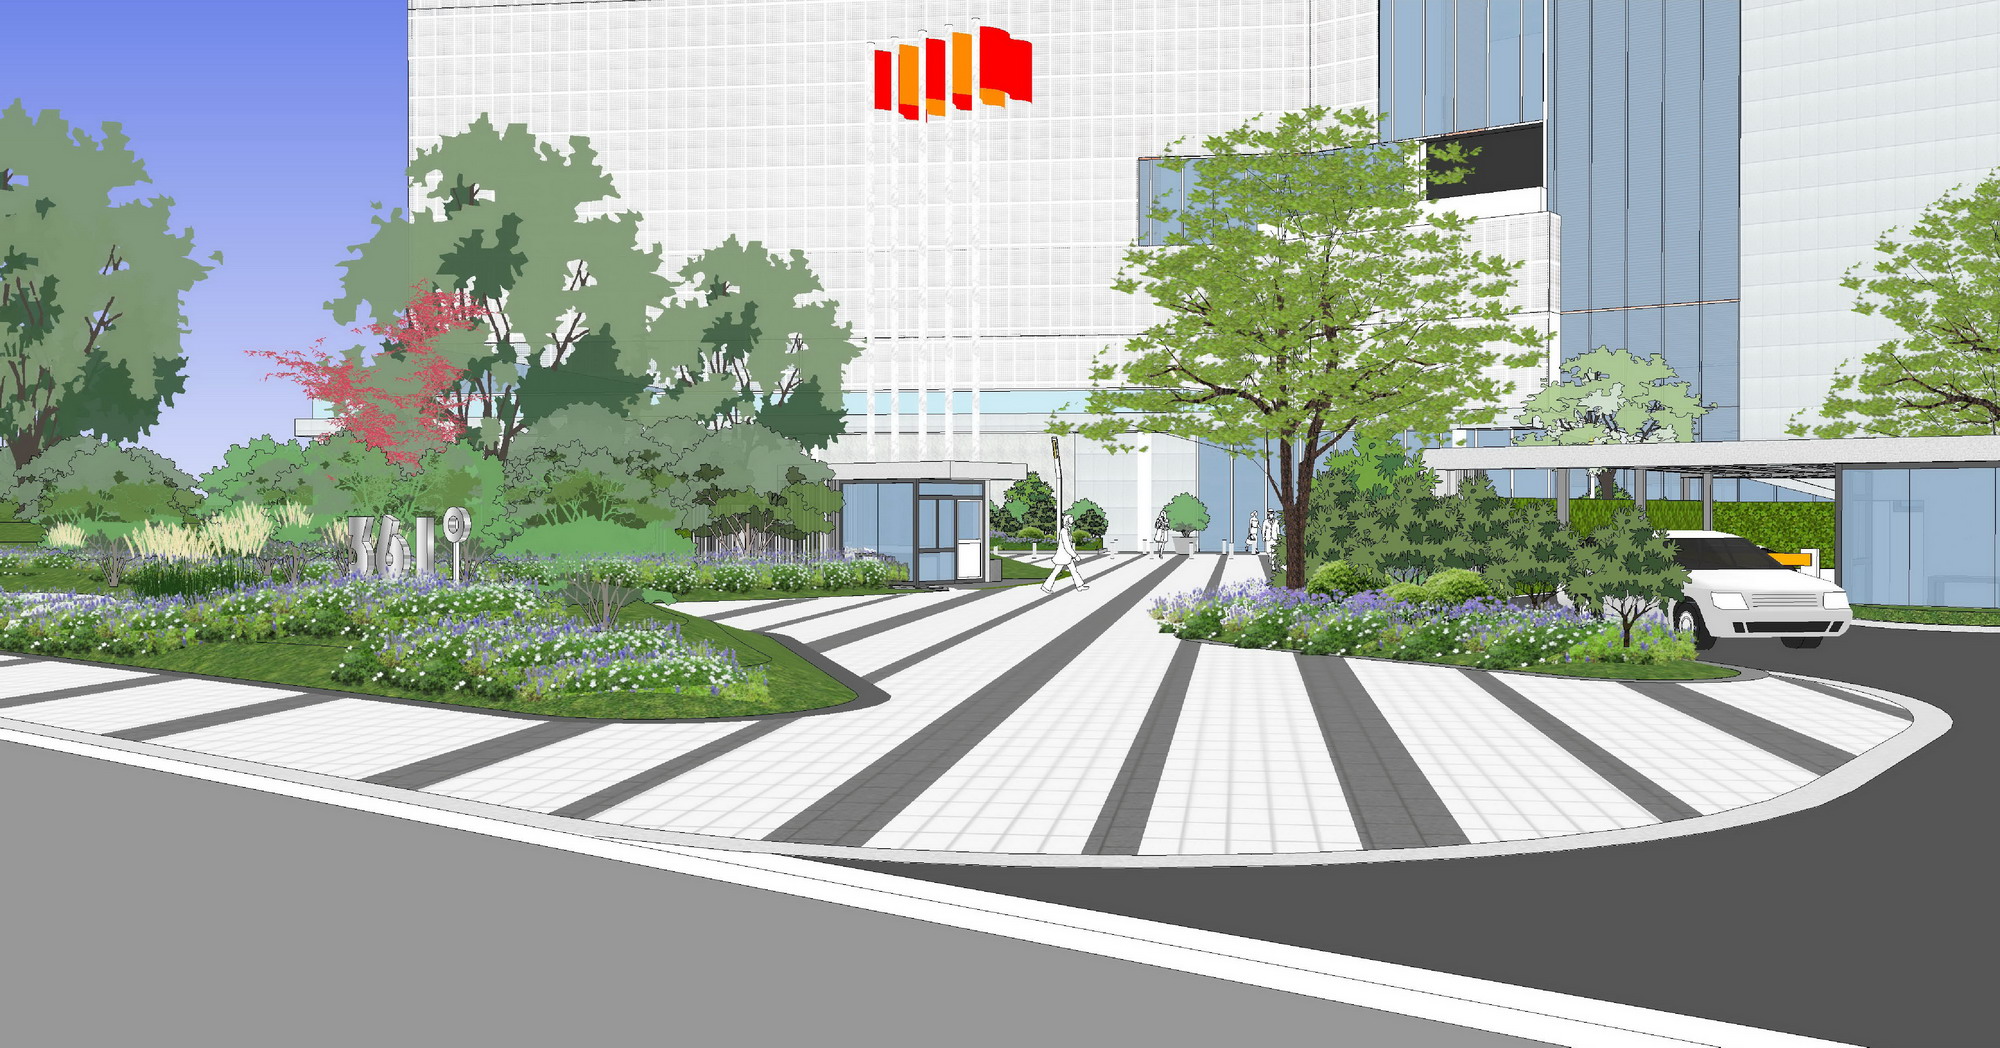 20150524-361°办公场地及屋顶花园景观方案设计文本49_缩小大小.jpg